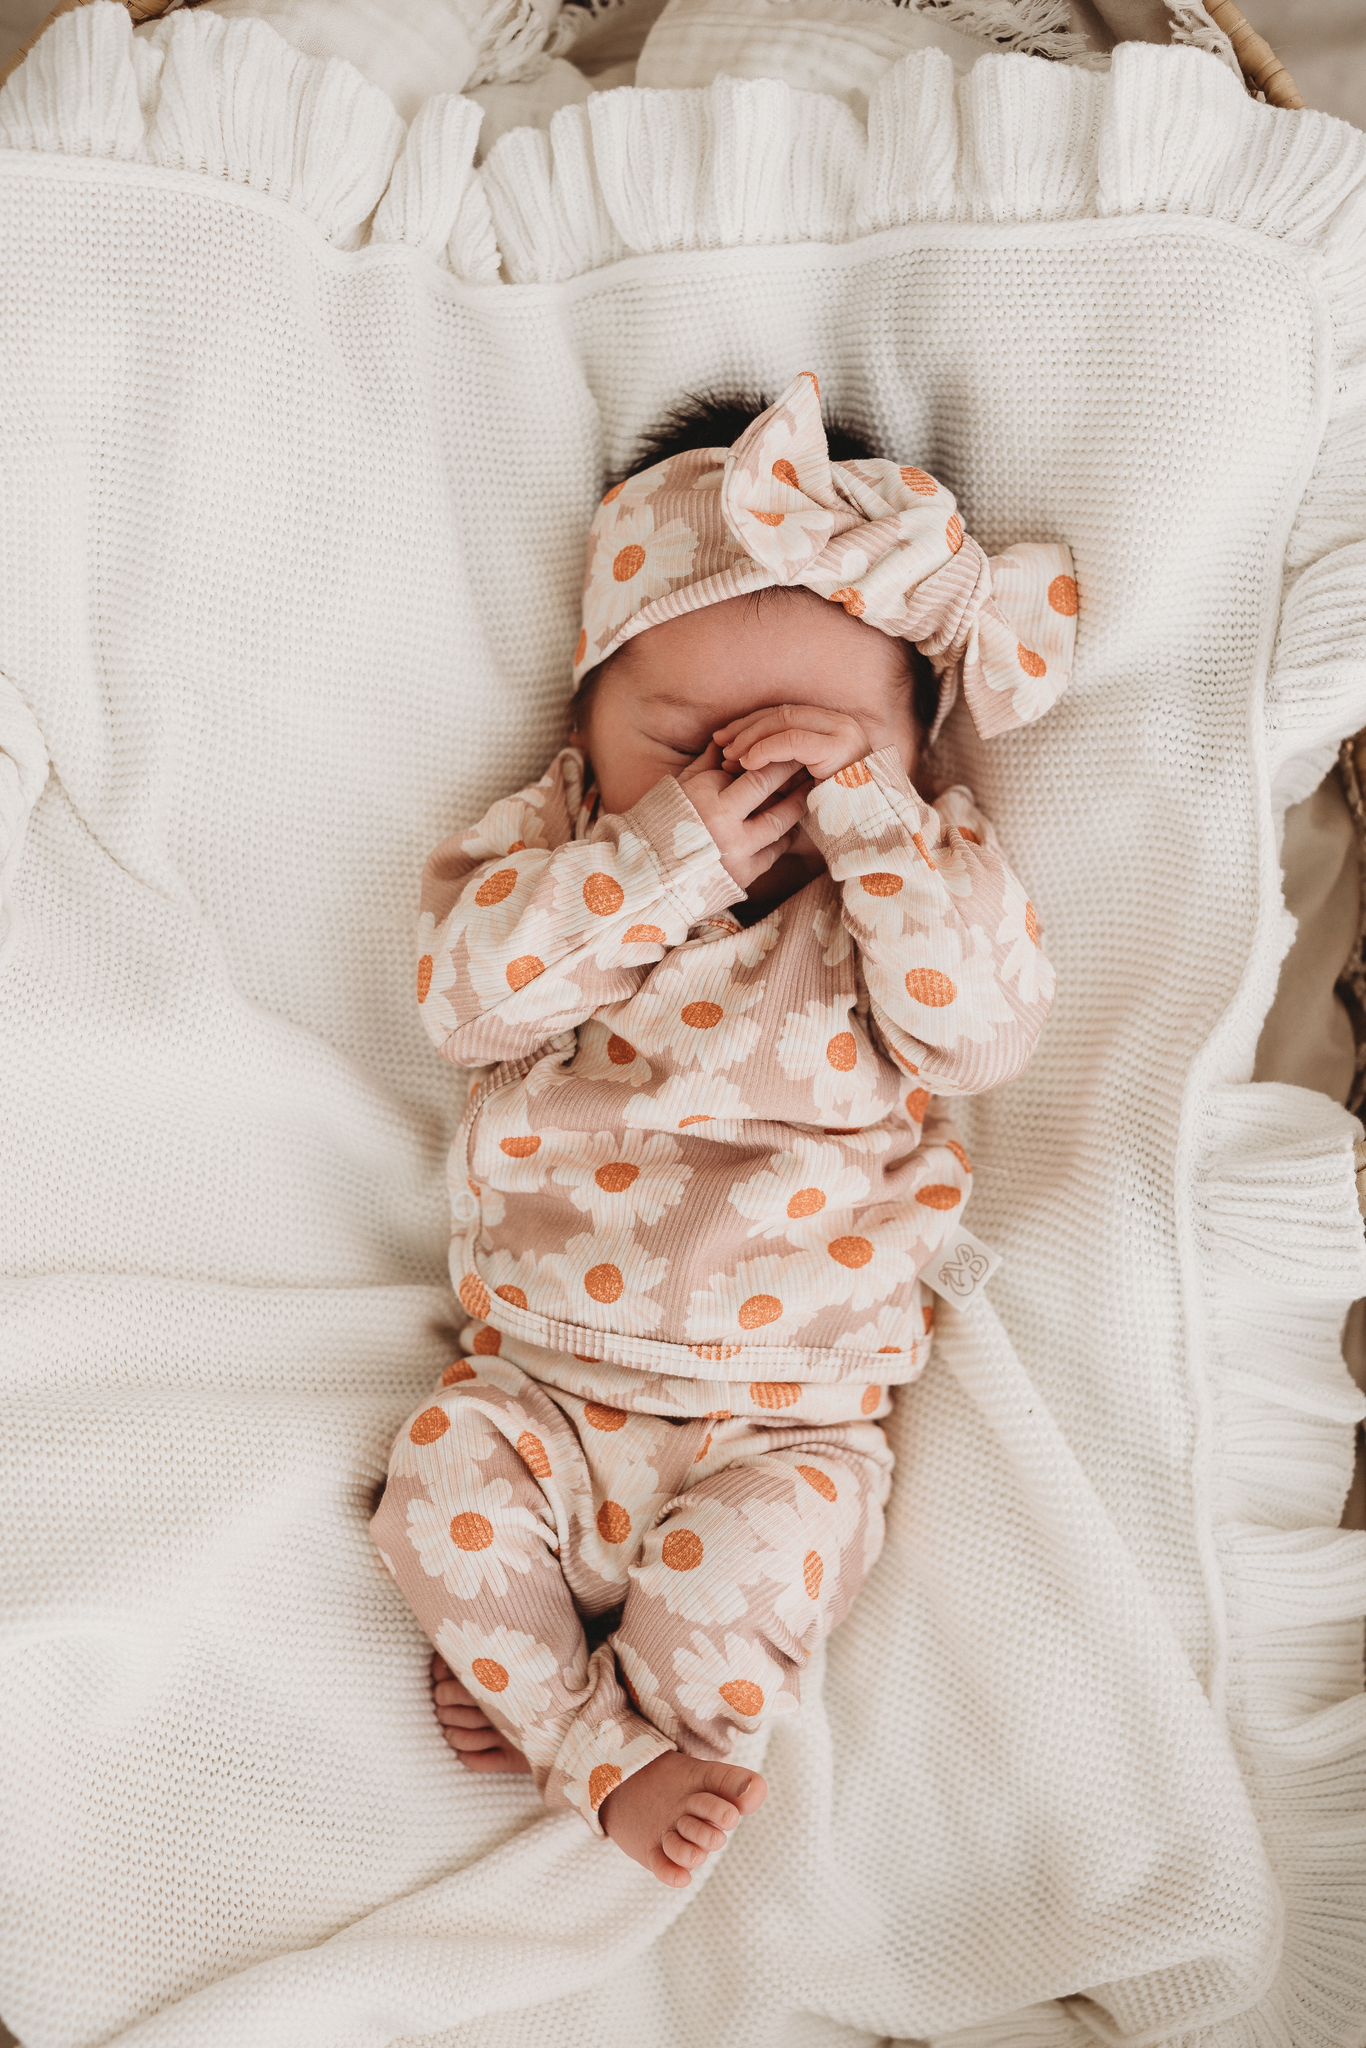 Een vredige pasgeboren baby gehuld in een Overslagshirt Daisy Delight gemaakt van katoen OEKO TEX en bijpassende hoofdband, comfortabel genesteld in een knus wiegje, symbool voor de pure onschuld en sereniteit van Yumi Baby.